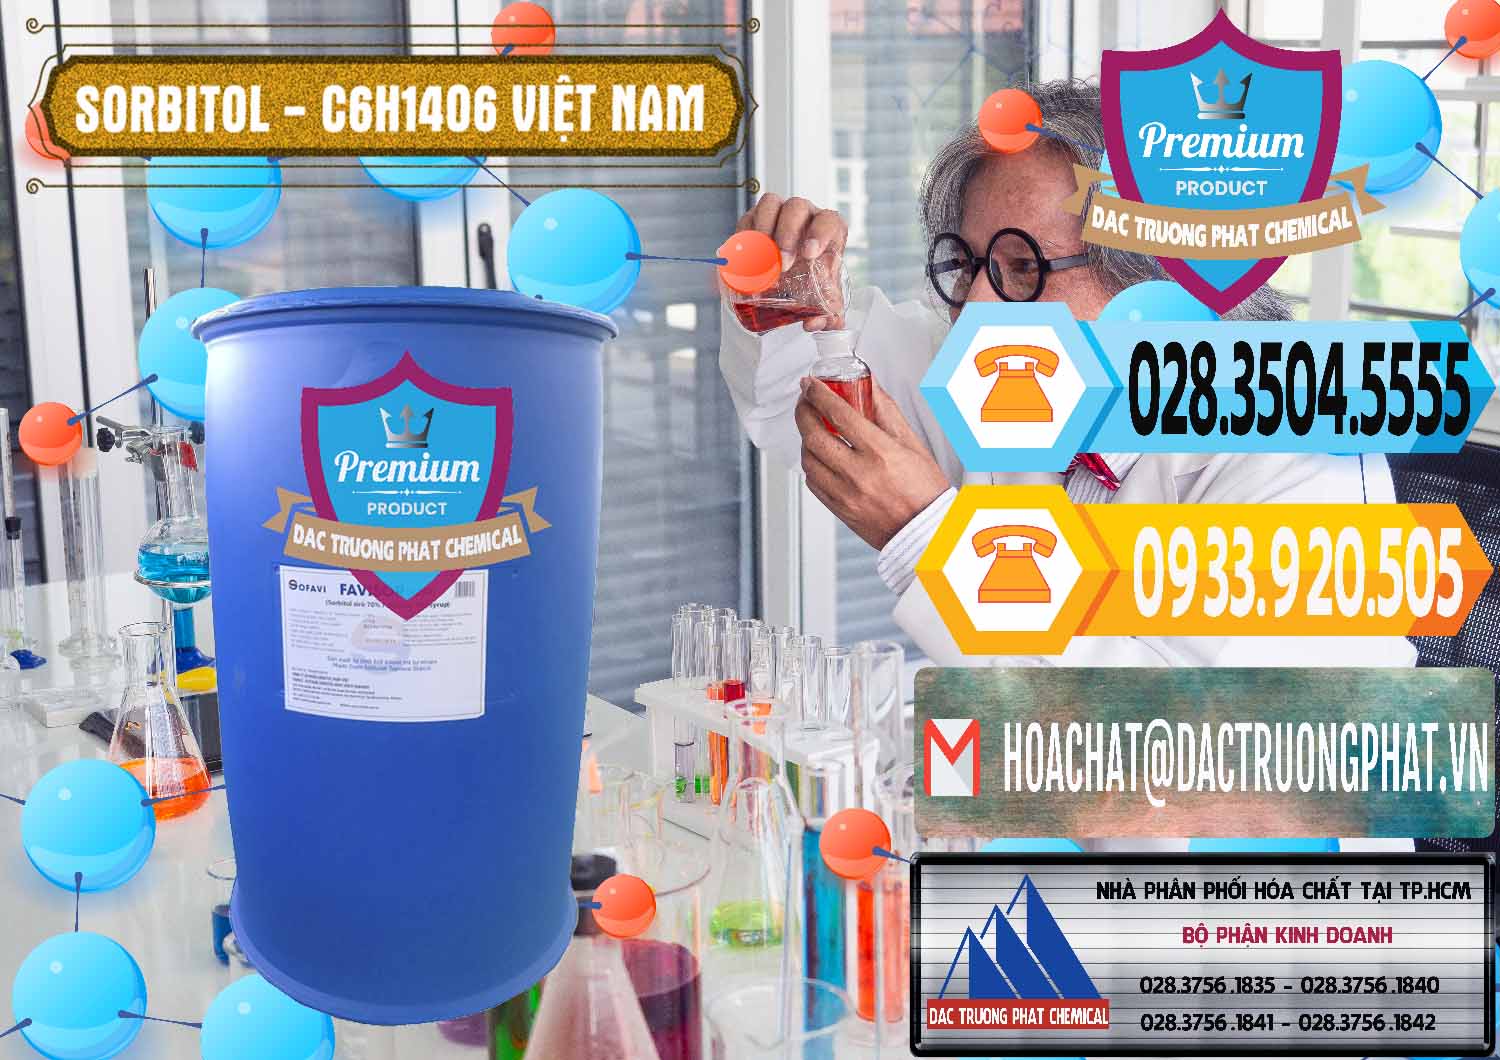 Công ty phân phối - cung cấp Sorbitol - C6H14O6 Lỏng 70% Food Grade Việt Nam - 0438 - Nơi cung ứng ( phân phối ) hóa chất tại TP.HCM - hoachattayrua.net